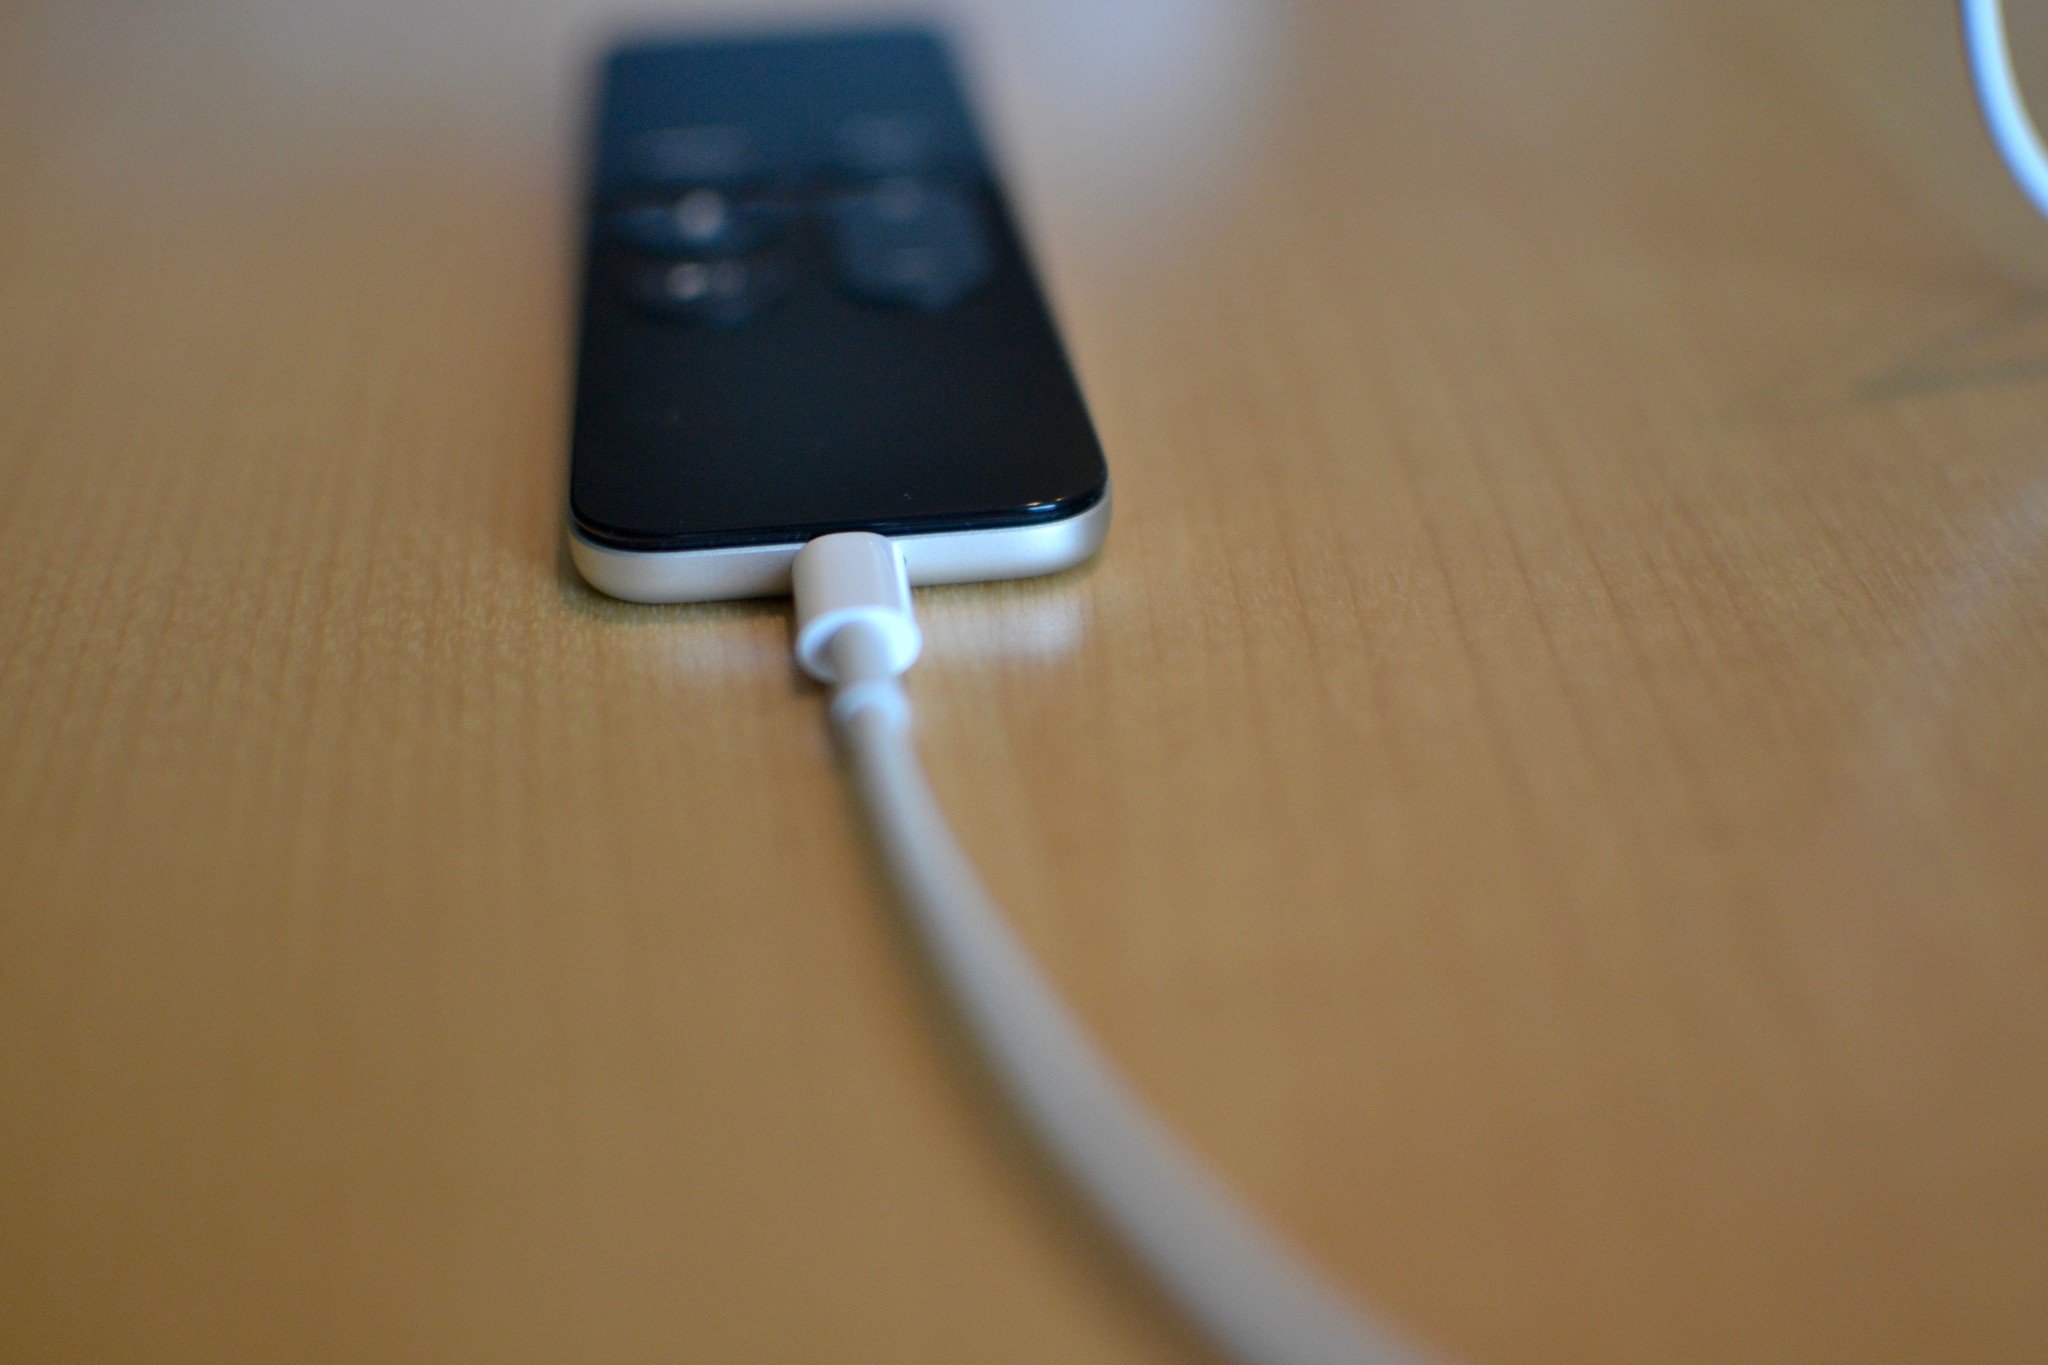 Siri Remote on Apple TV